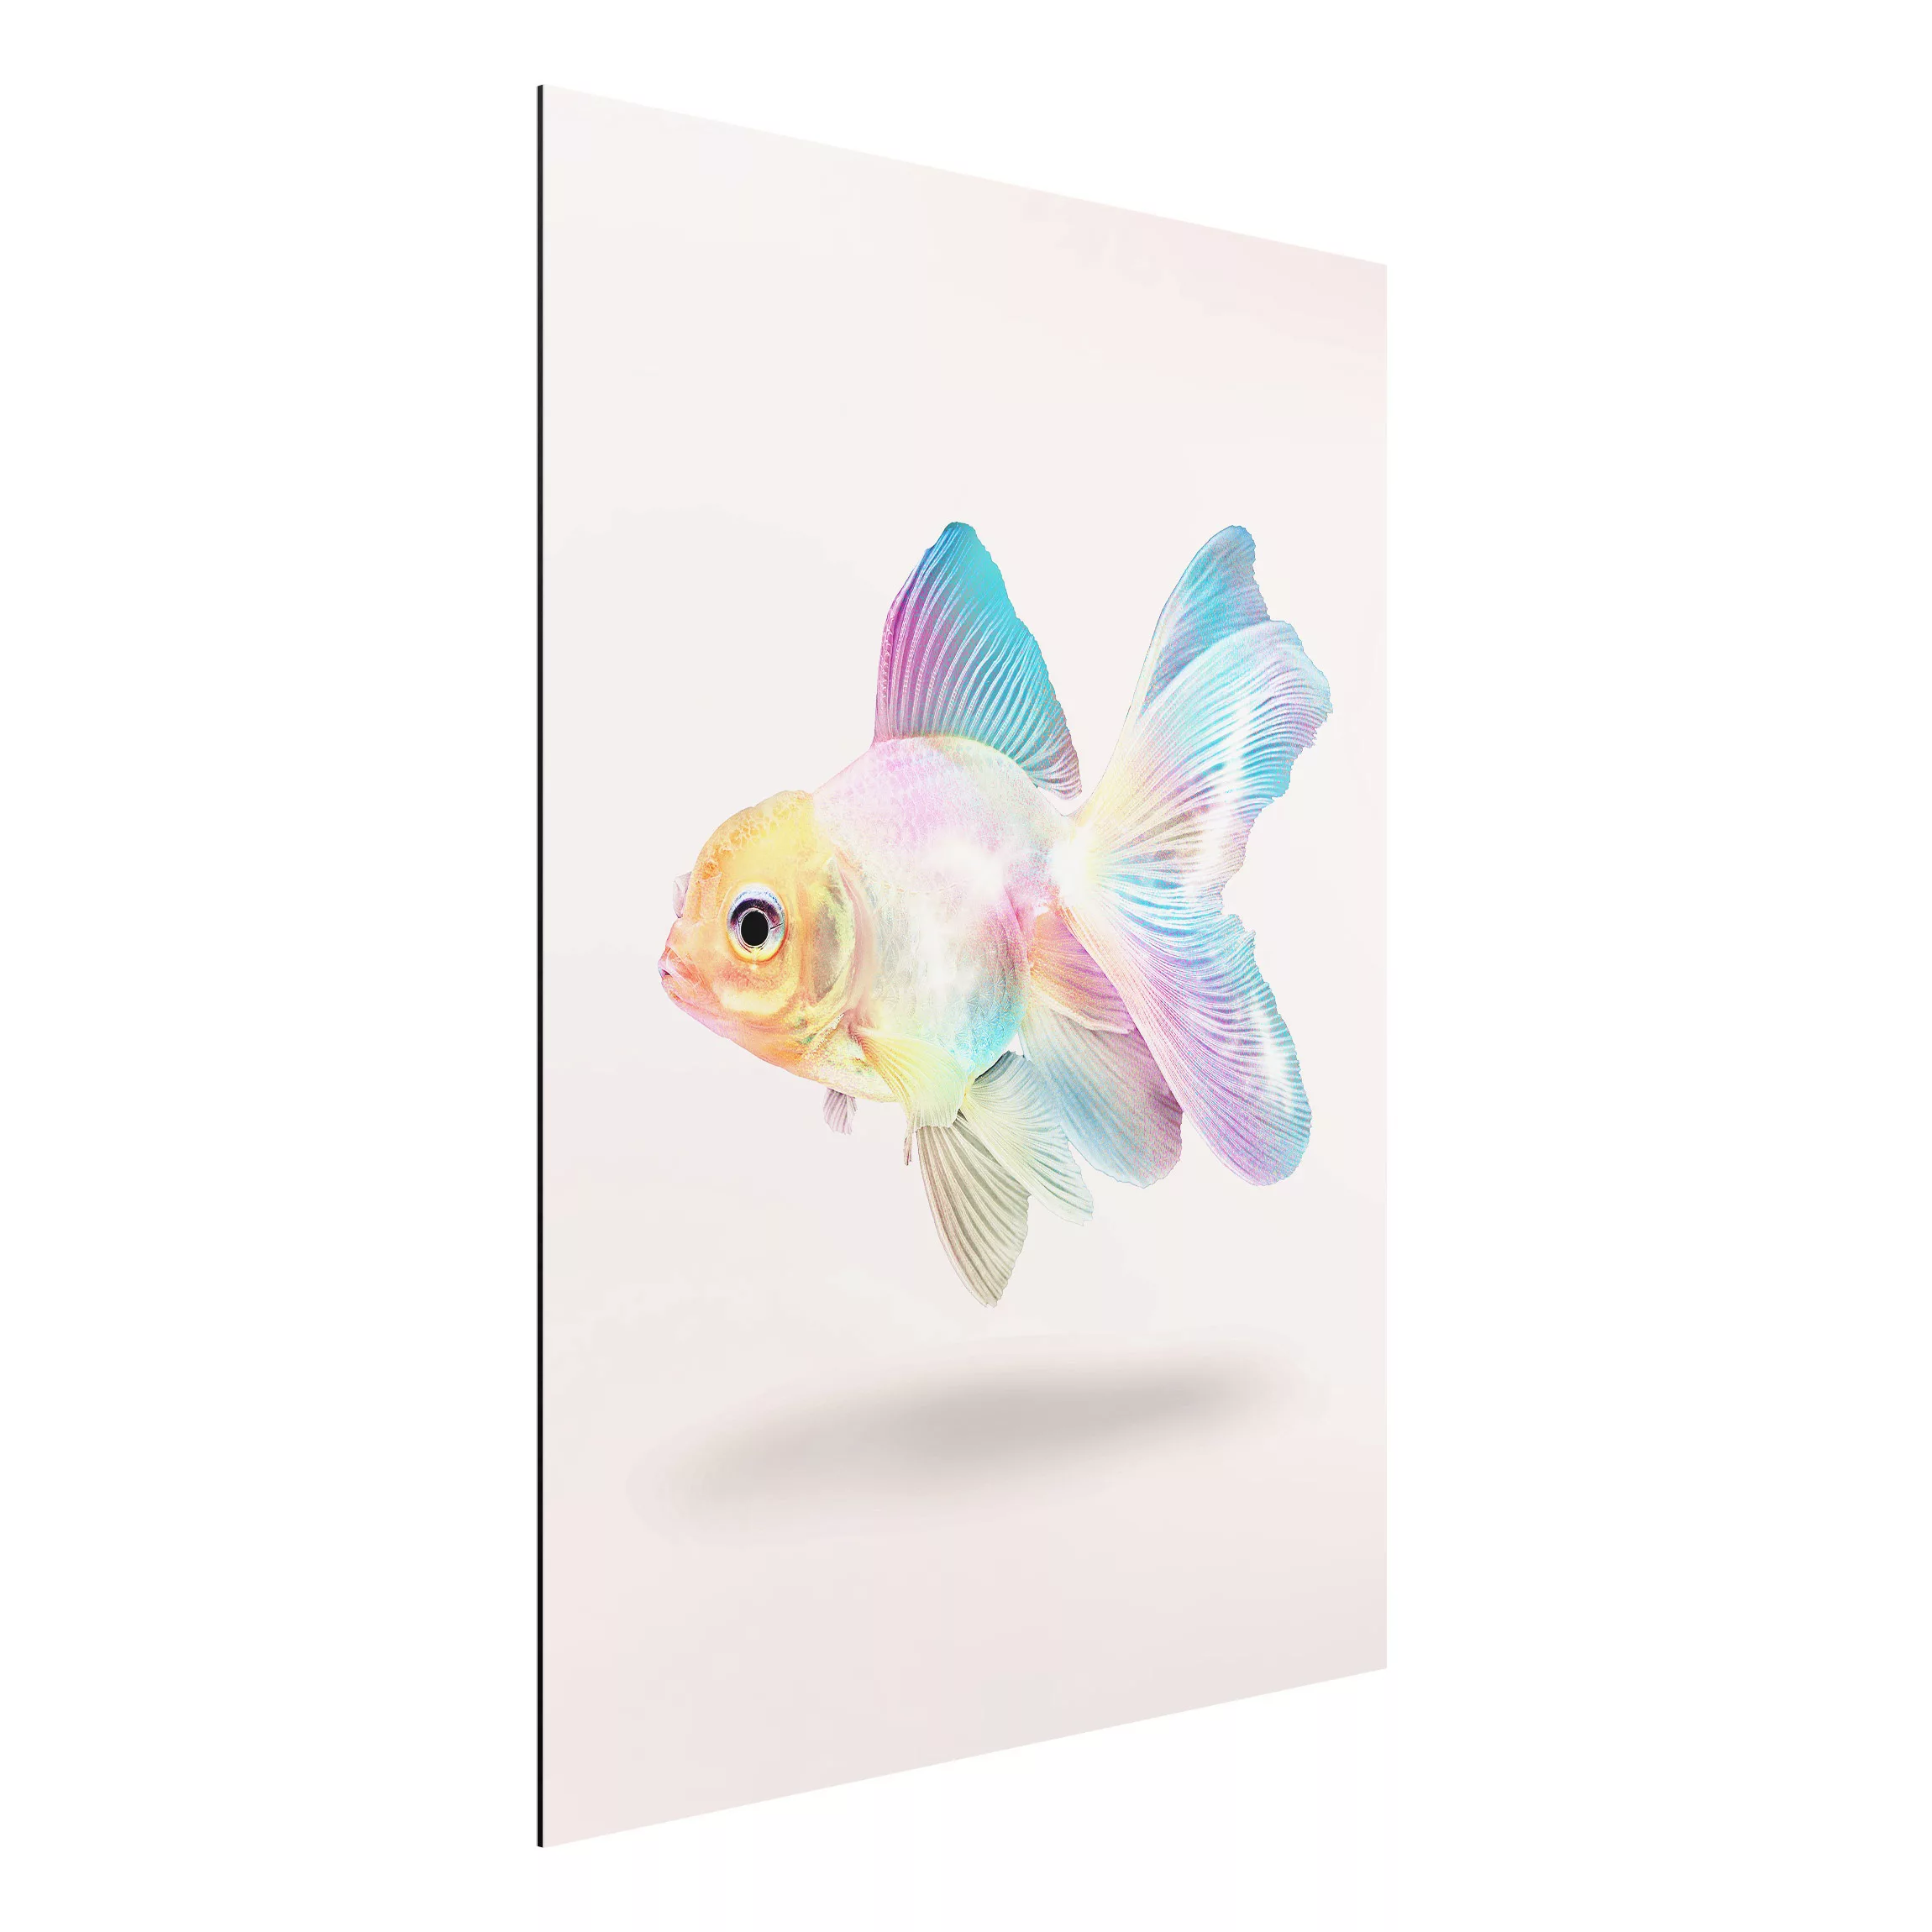 Alu-Dibond Bild Kunstdruck - Hochformat 3:4 Fisch in Pastell günstig online kaufen